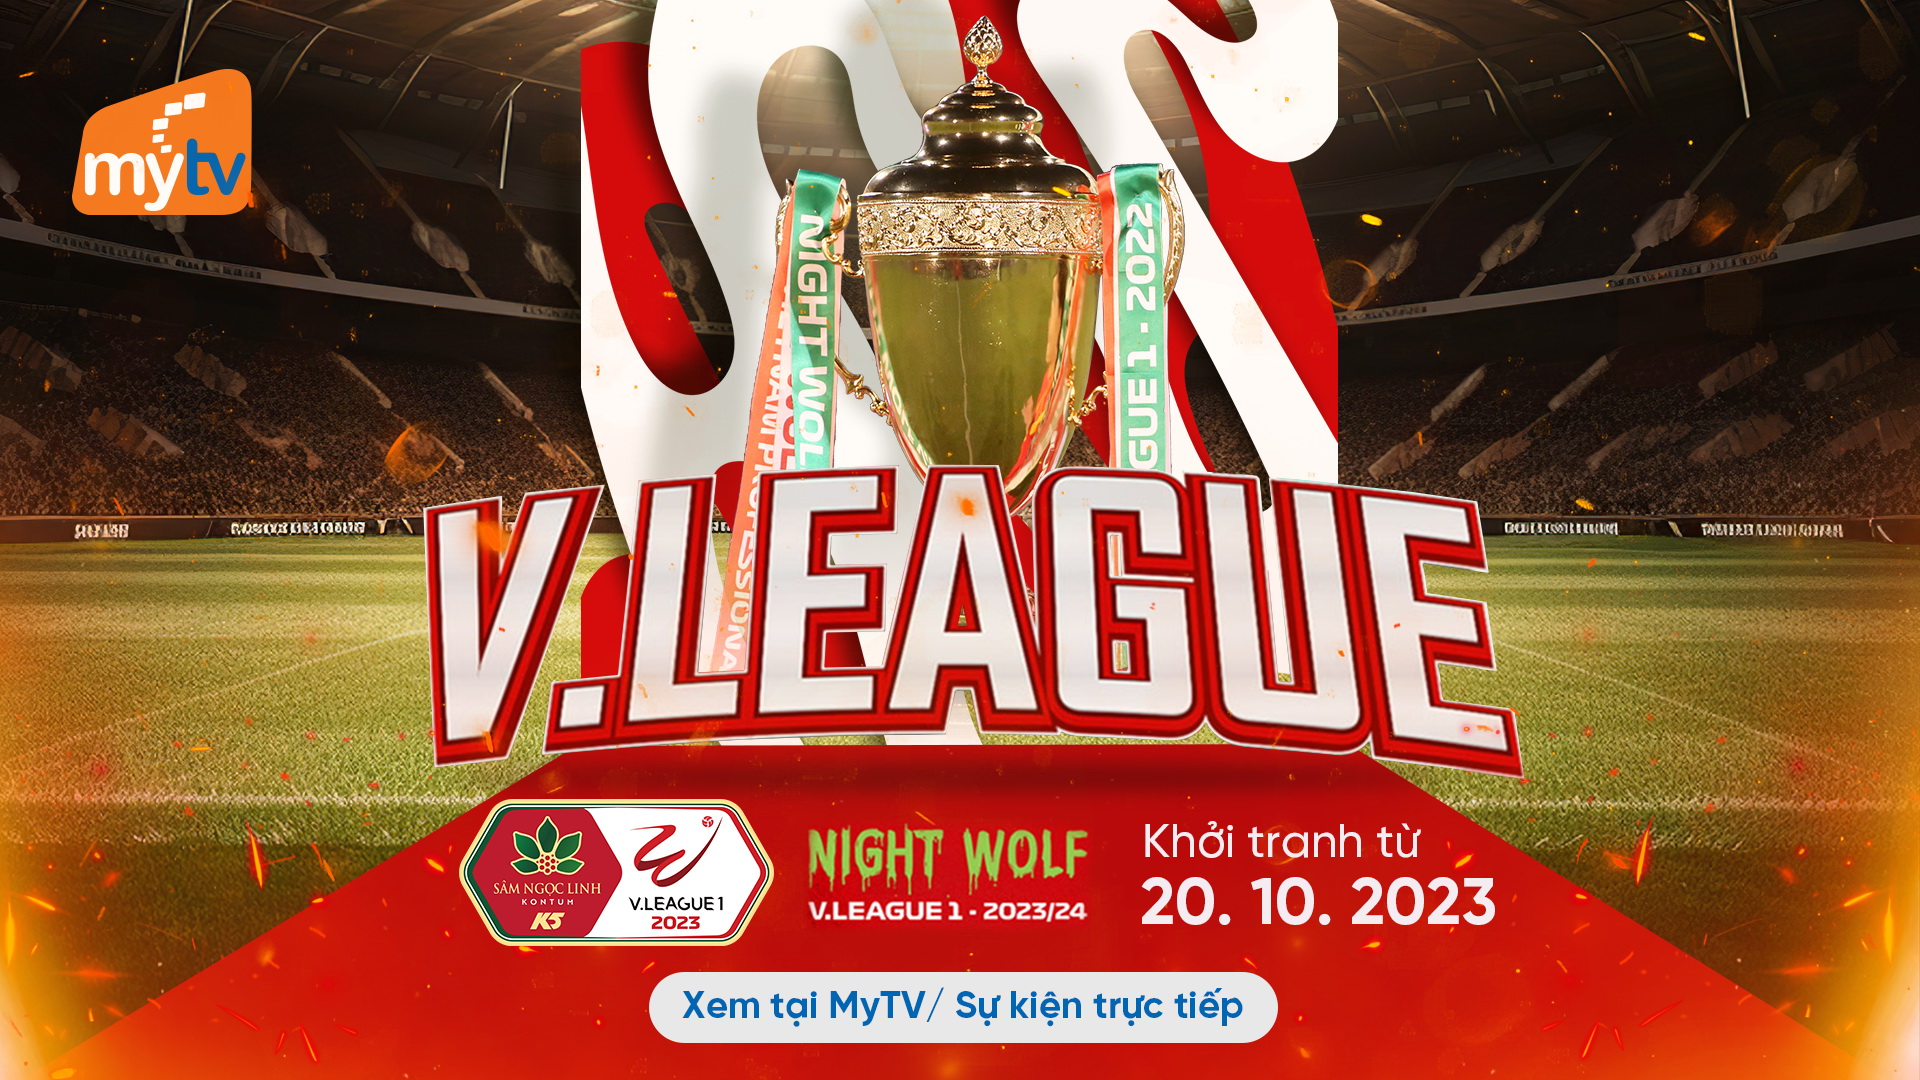 Xem trực tiếp mùa giải mới Night Wolf V-League trên Truyền hình MyTV